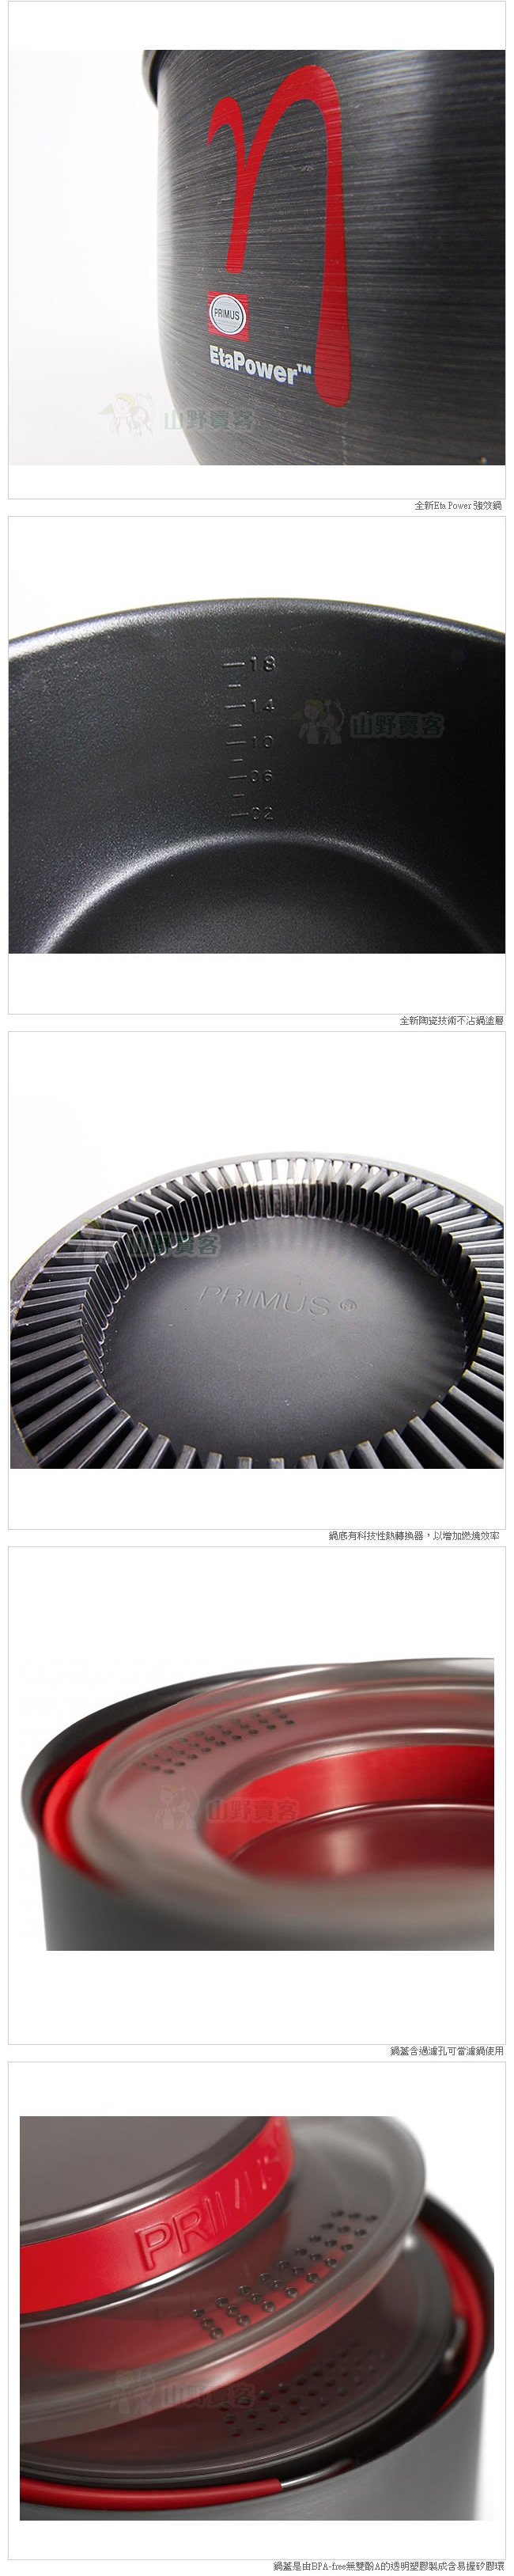 PRIMUS 737400 ETA高效率湯鍋 1.8L 陶瓷不沾鍋塗層 硬鋁鍋